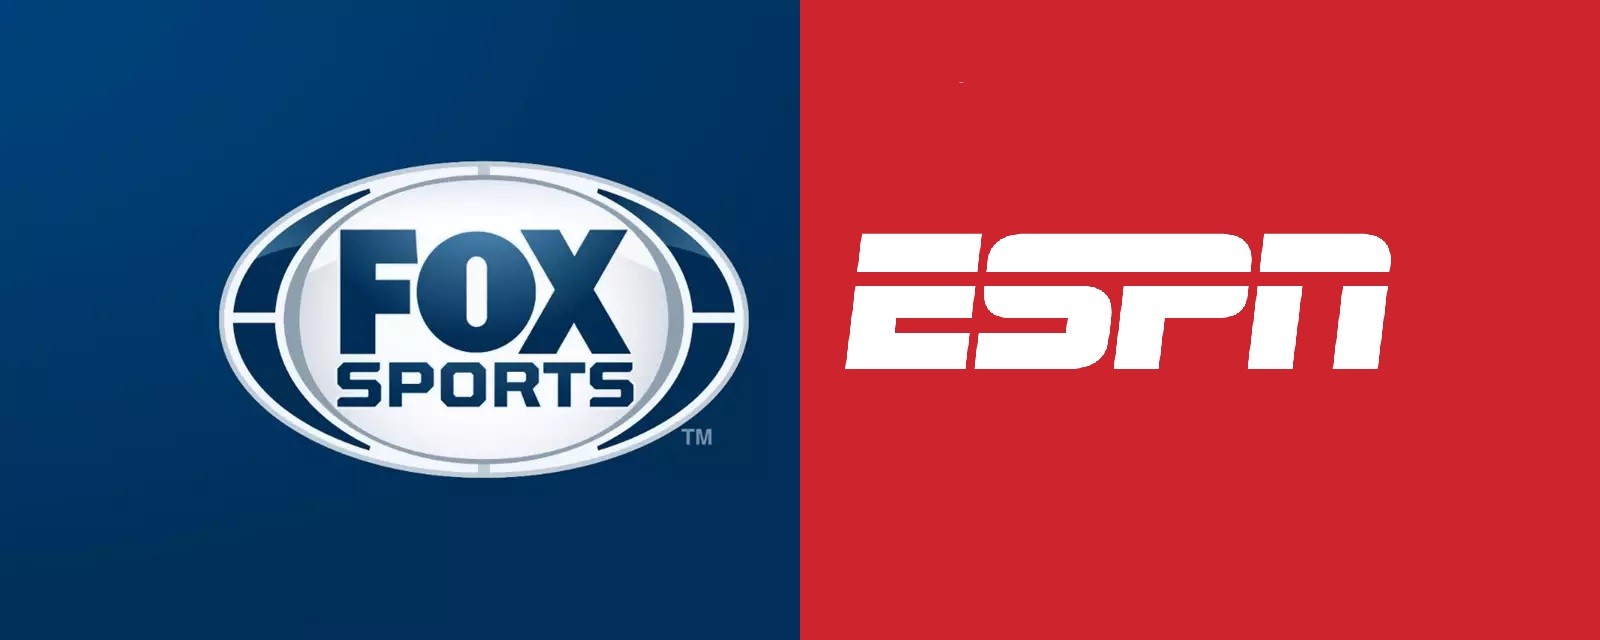 Disney descontinúa la marca ESPN Brasil y cambia el nombre a FOX Sports; mira como quedaron